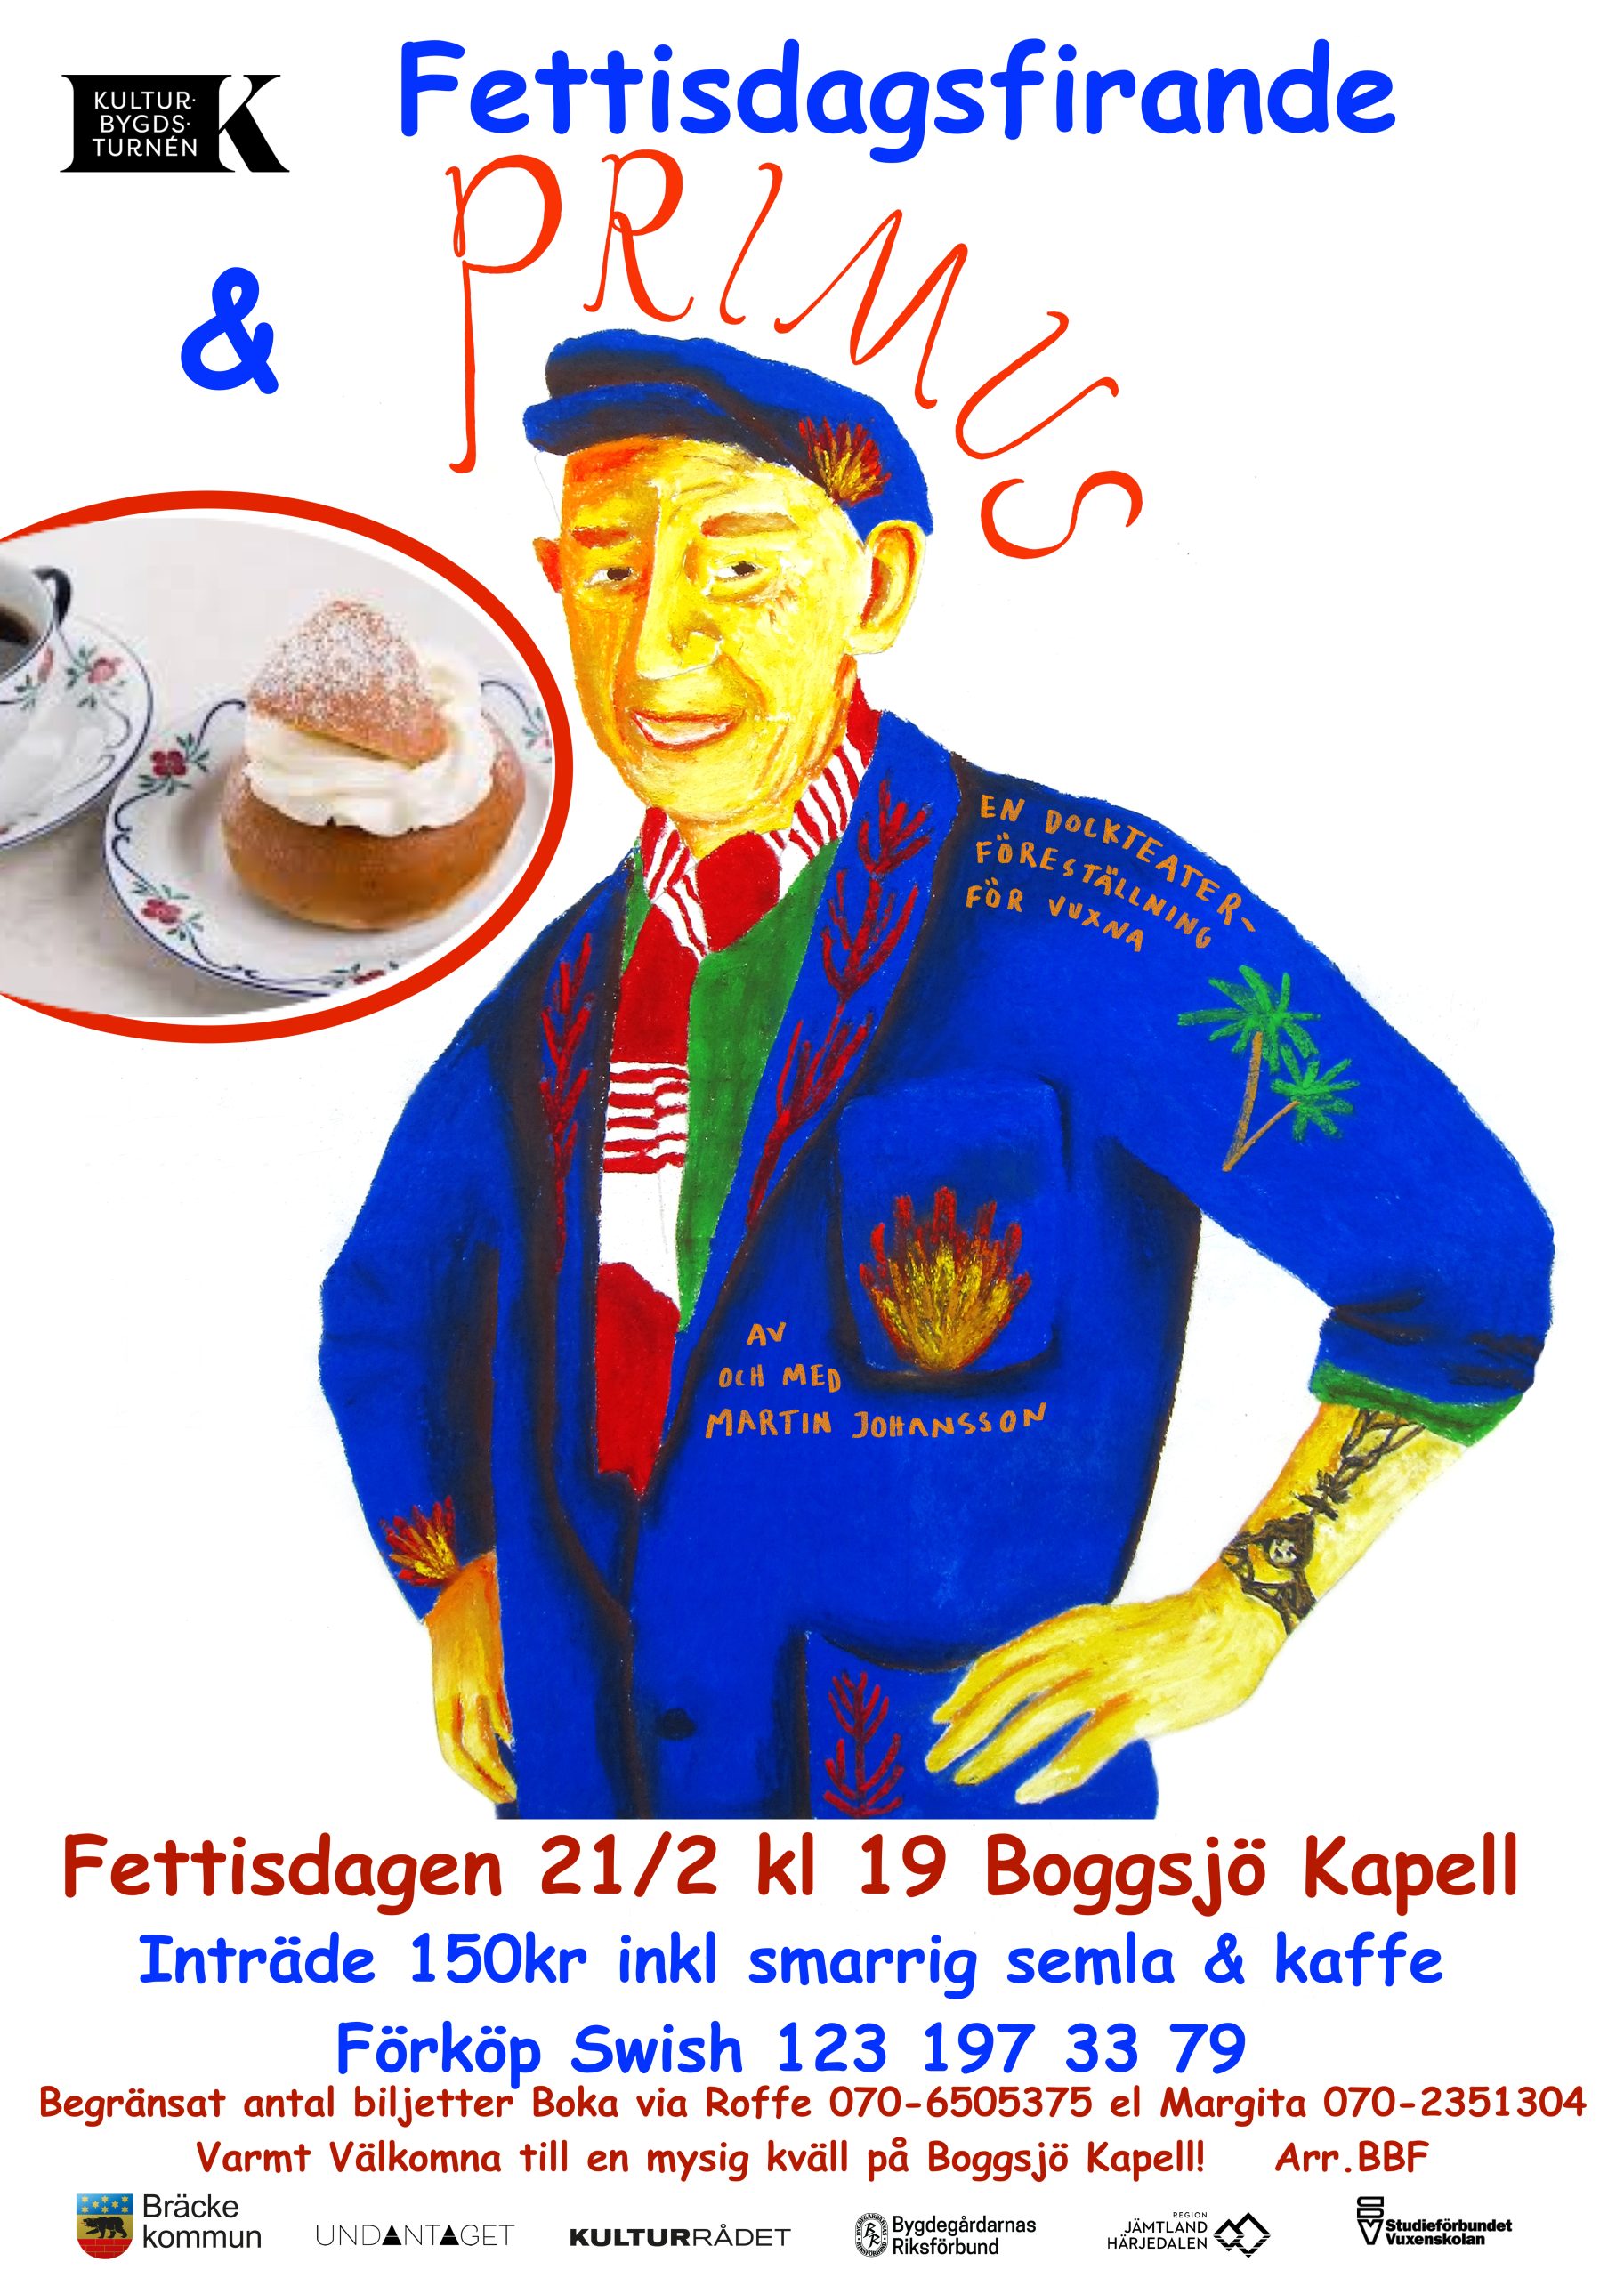 Fettisdagsfirande med PRIMUS på Boggsjö Kapell